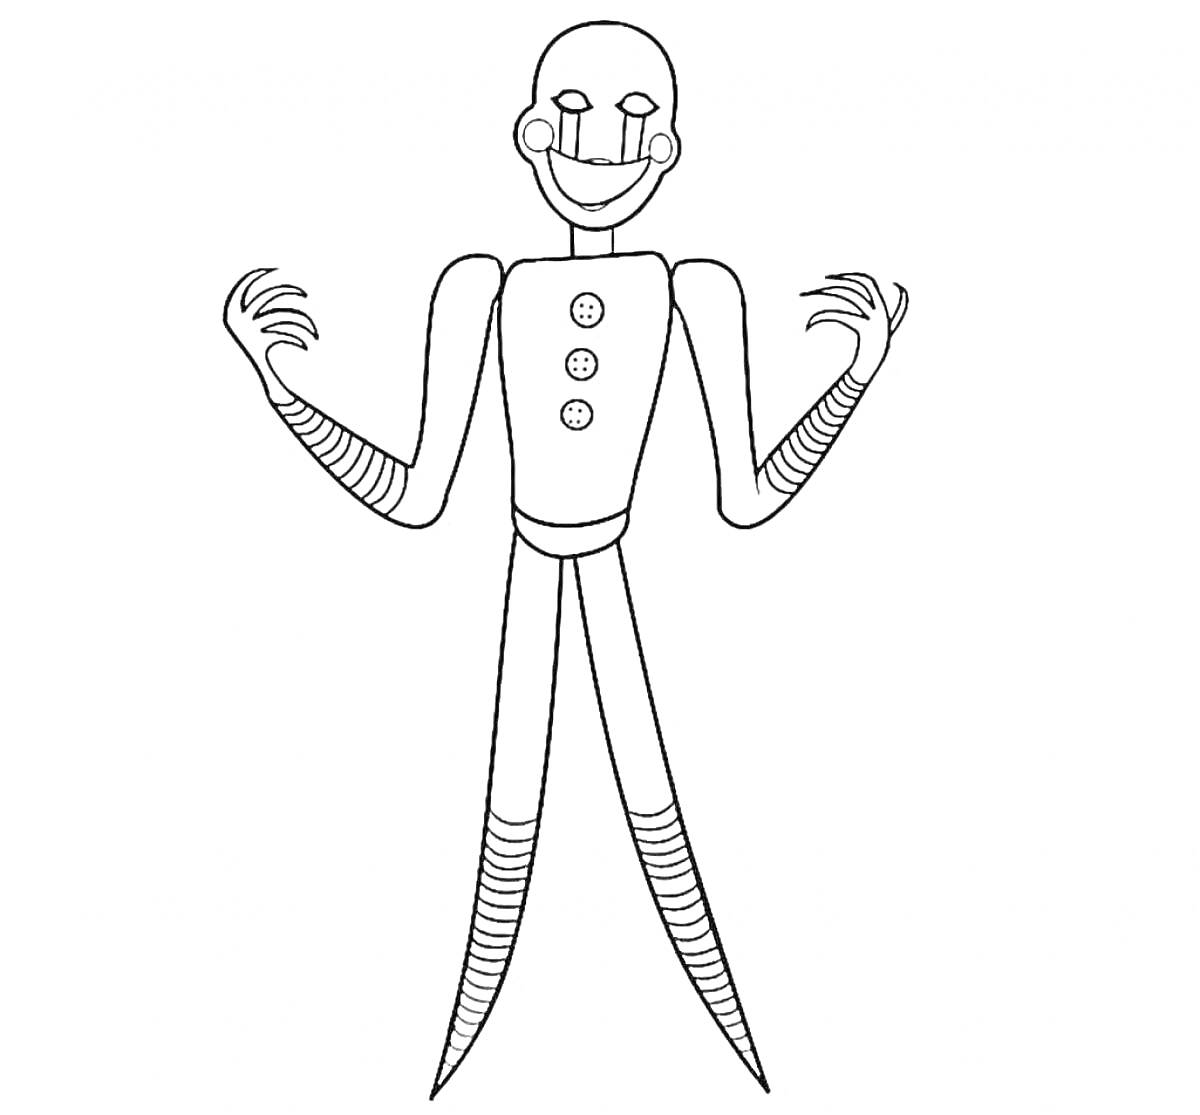 Раскраска Папа Длинные Ноги с длинными руками и ногами в куколоподобном стиле